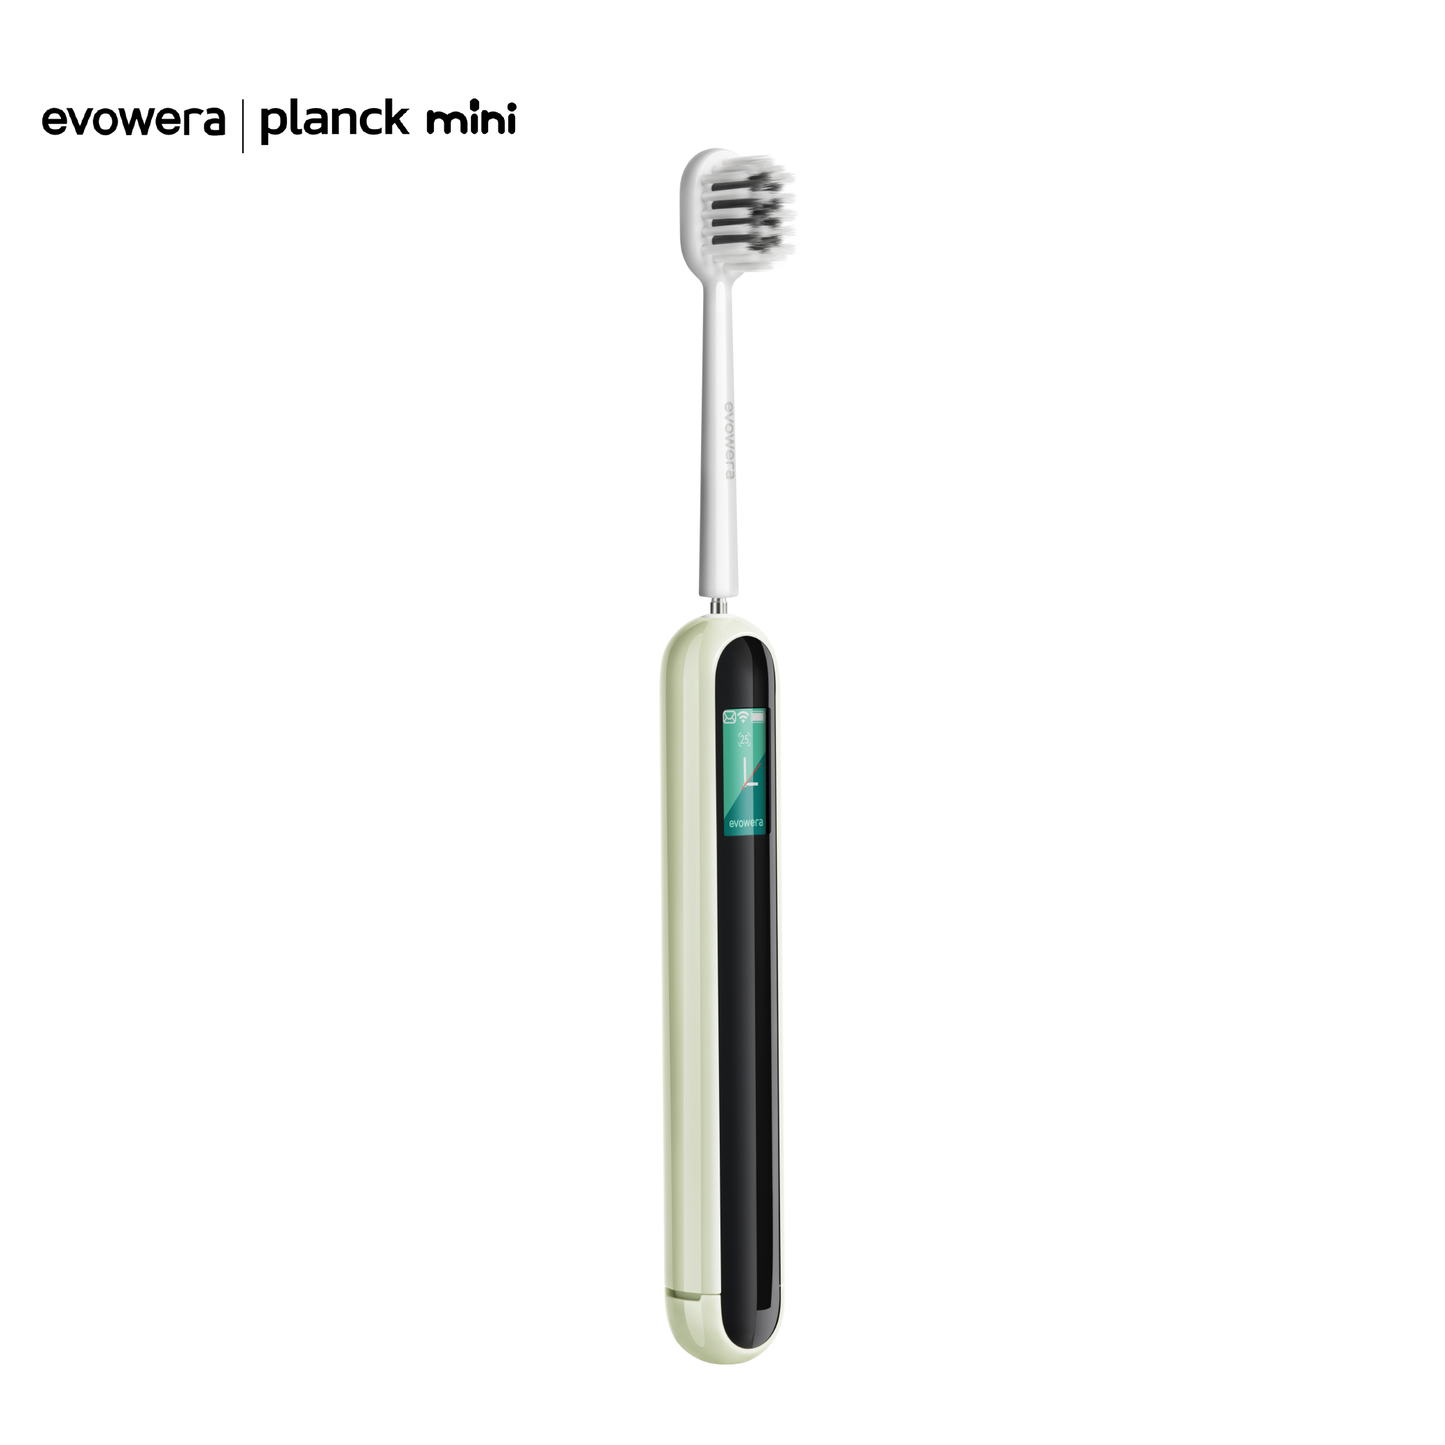 Planck Mini für Erwachsene, intelligente Handzahnbürste